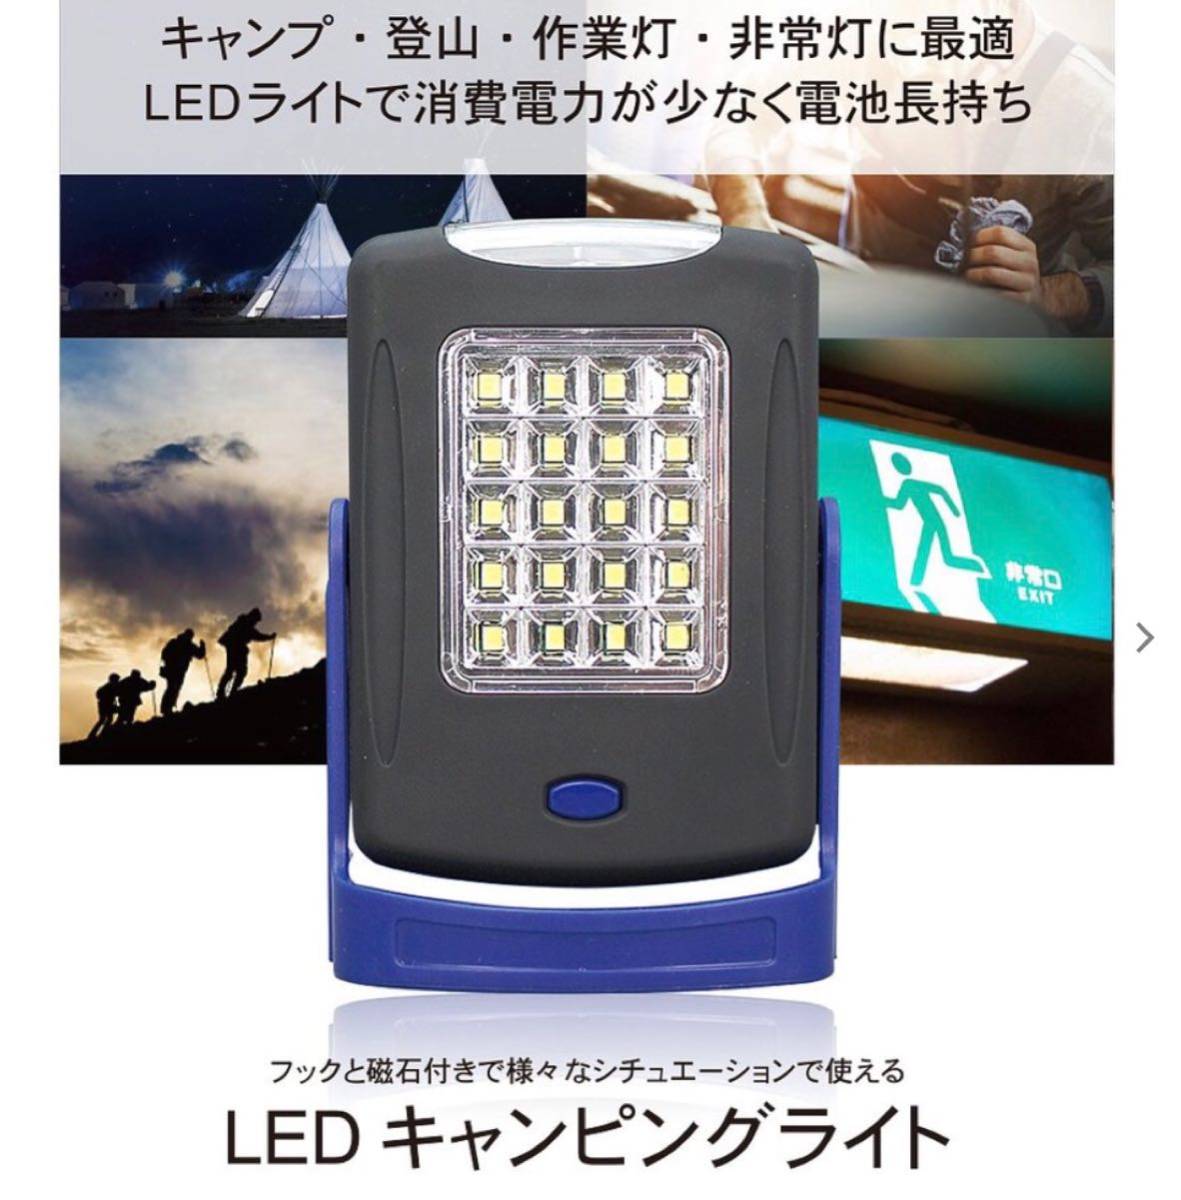 LEDライト マグネット 電池式 ランタン LED 防災 キャンプ ライト 吊り下げ 卓上 キャンピングライト クローゼット